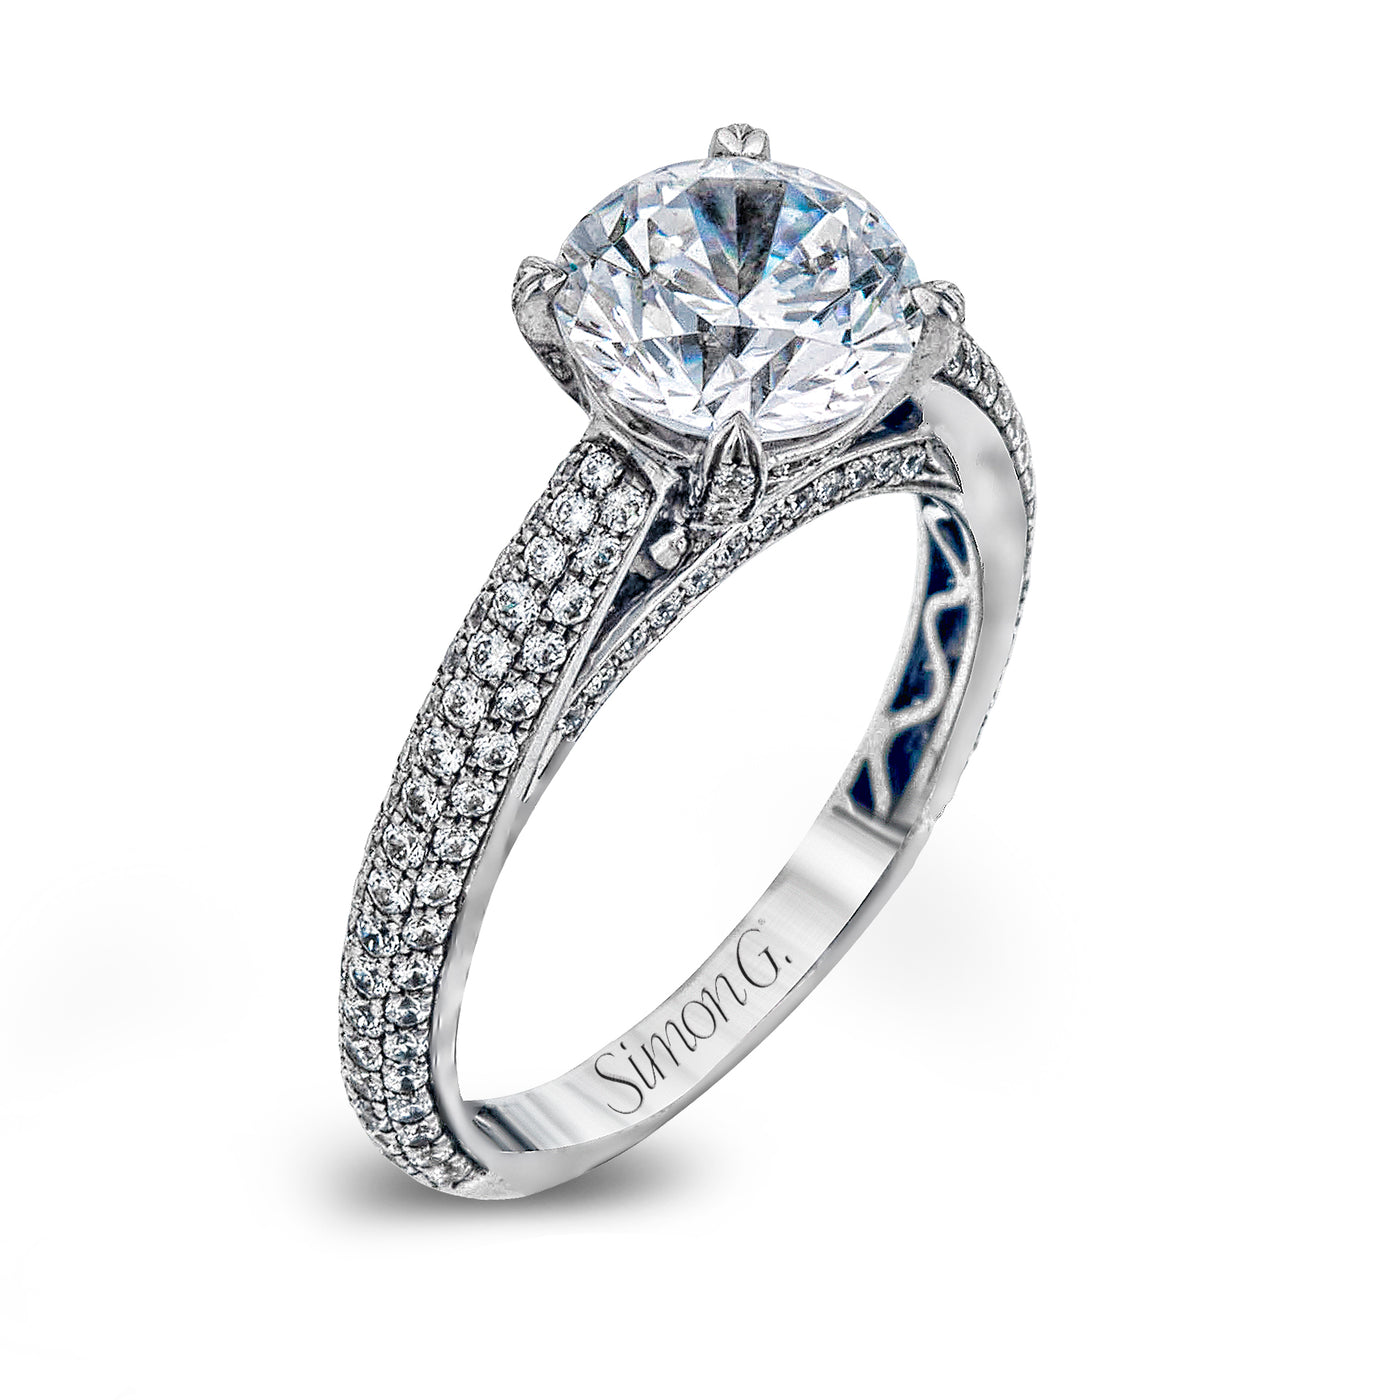 Simon G LP1973 Diamond Engagement Ring in White Gold